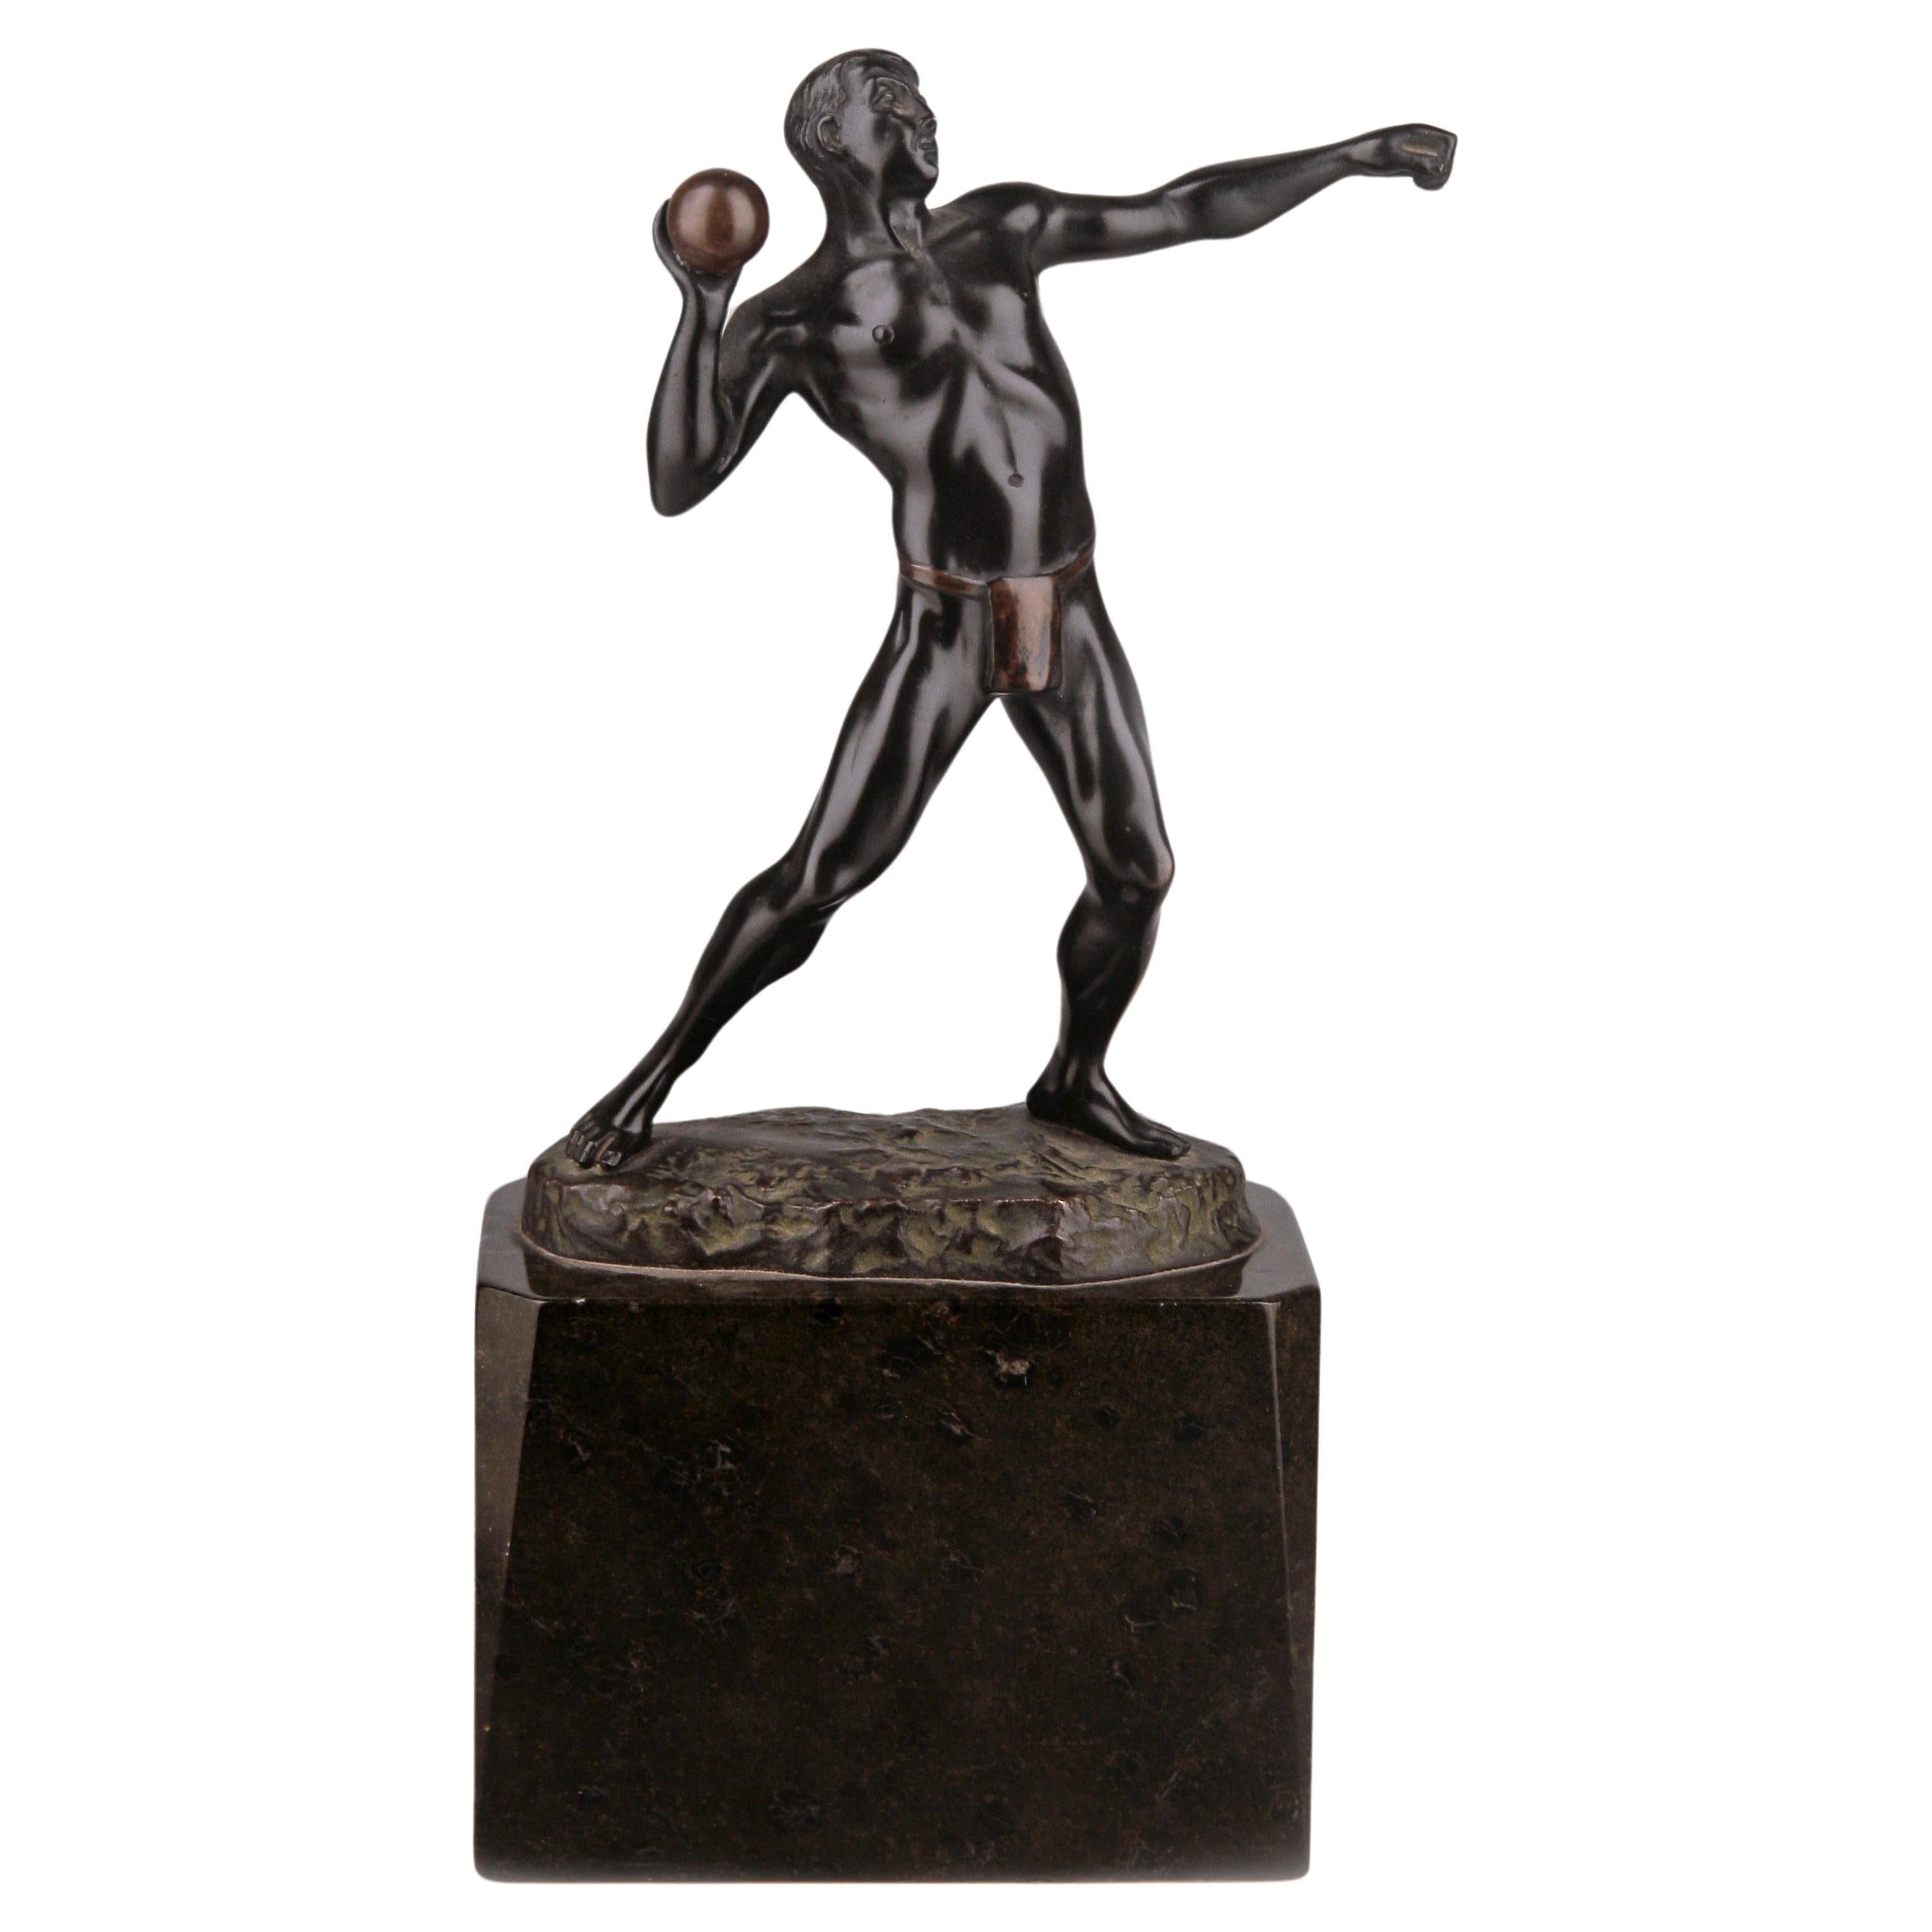 Jugendstil German Bronze Sculpture of Athlete Throwing a Ball by Schmidt-Felling For Sale